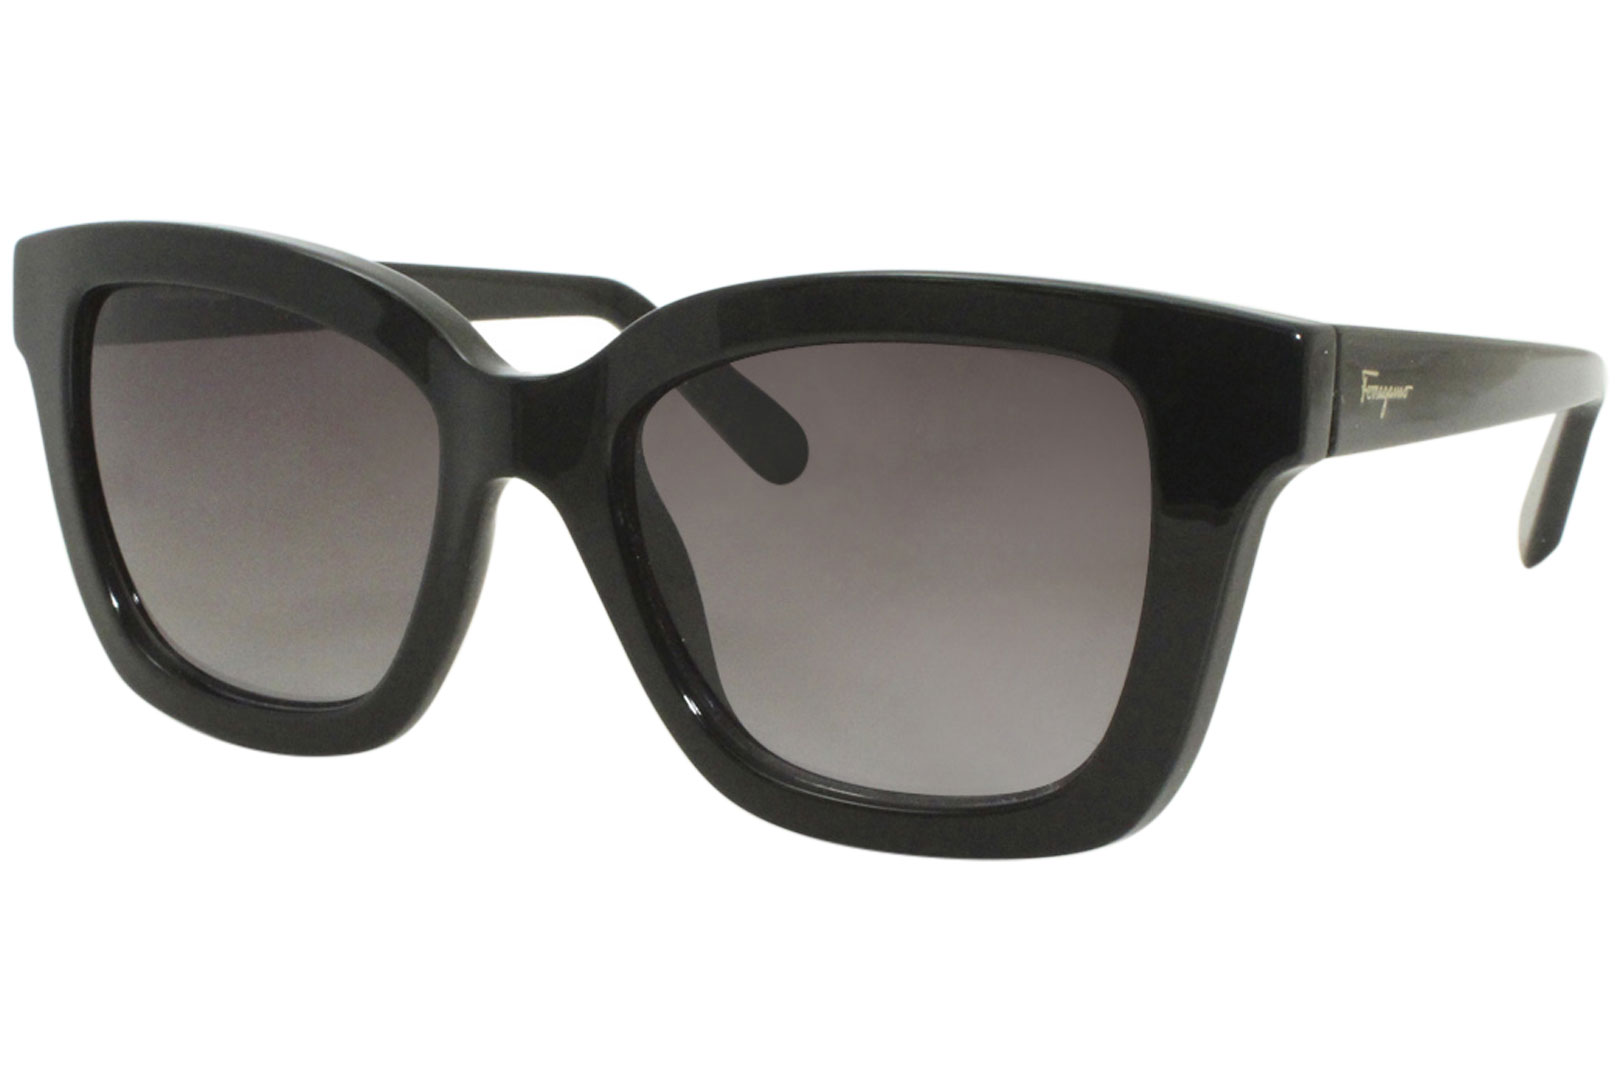 Salvatore Ferragamo SF955S Sunglasses Women's Fashion Square Shades ...